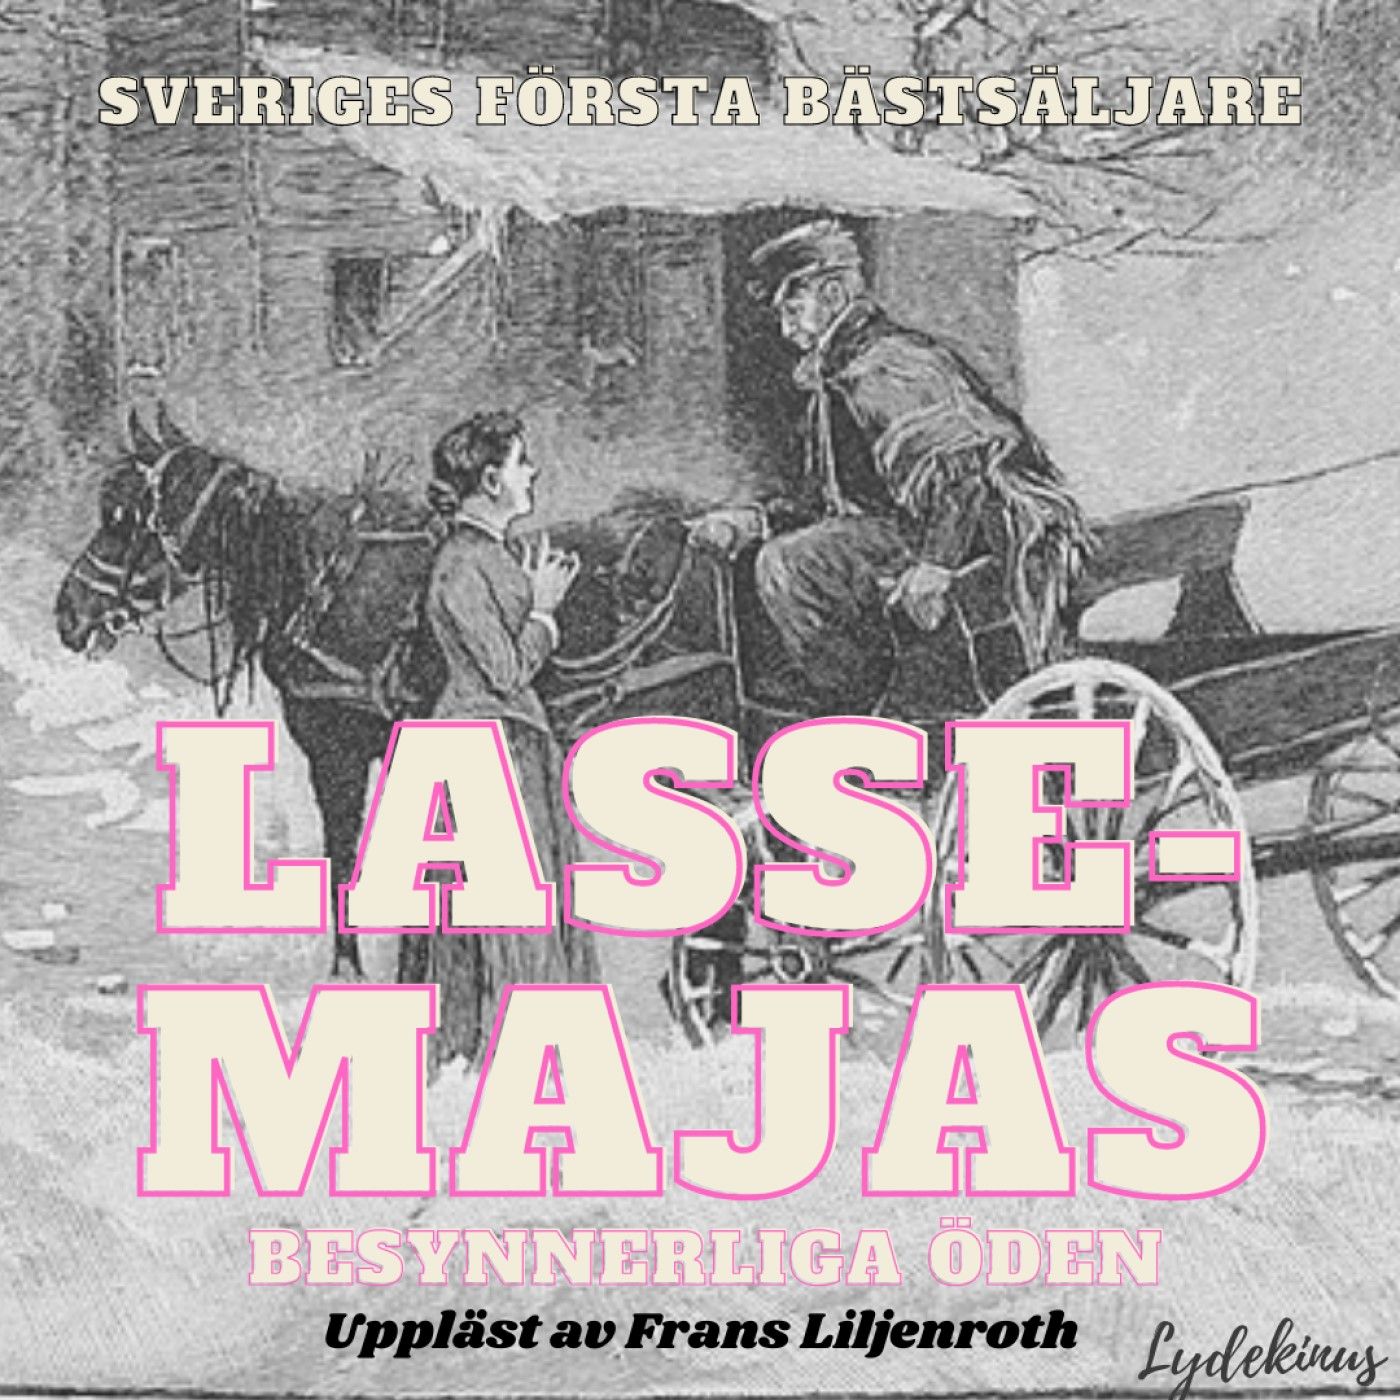 Lasse-Majas besynnerliga öden, ljudbok av Lasse-Maja, Lars Molin